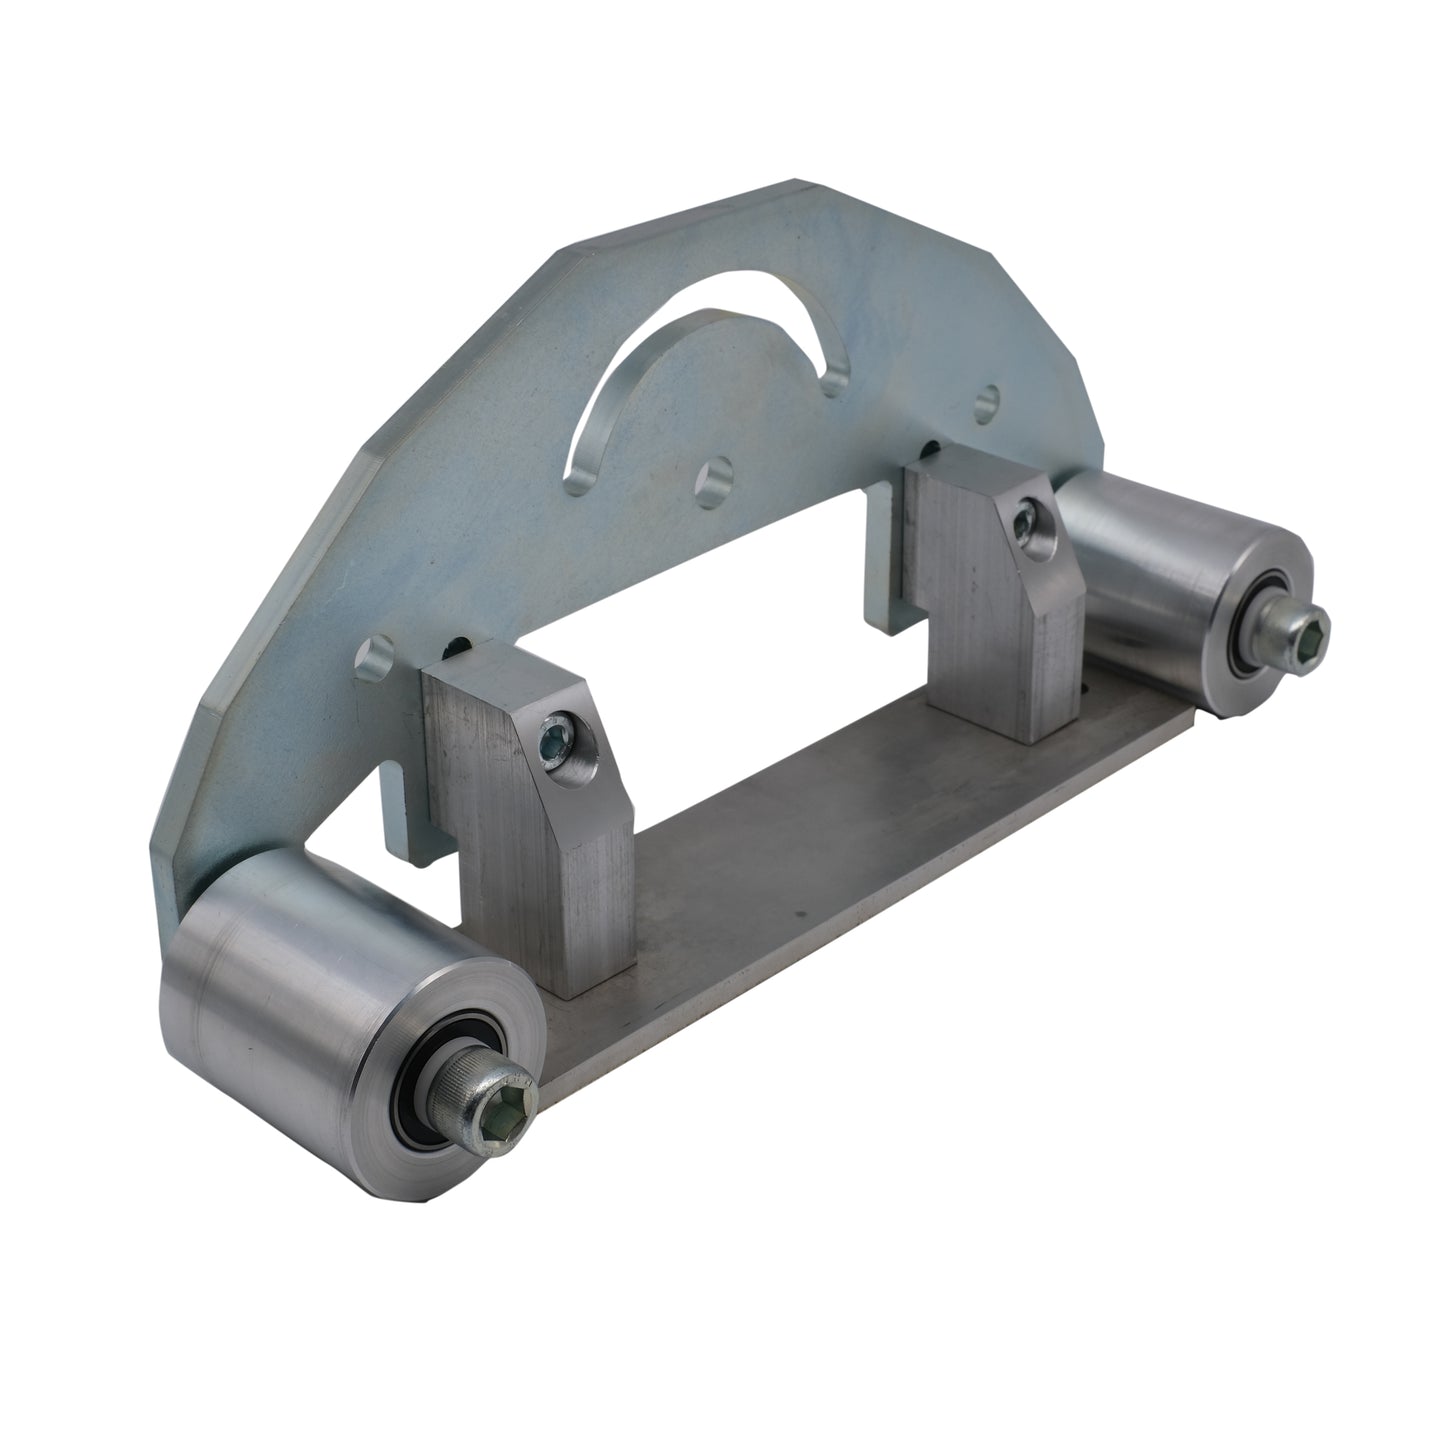 TR MAKER Belt Grinder D-Backing plate for 2x72" knife making grinder with wheels